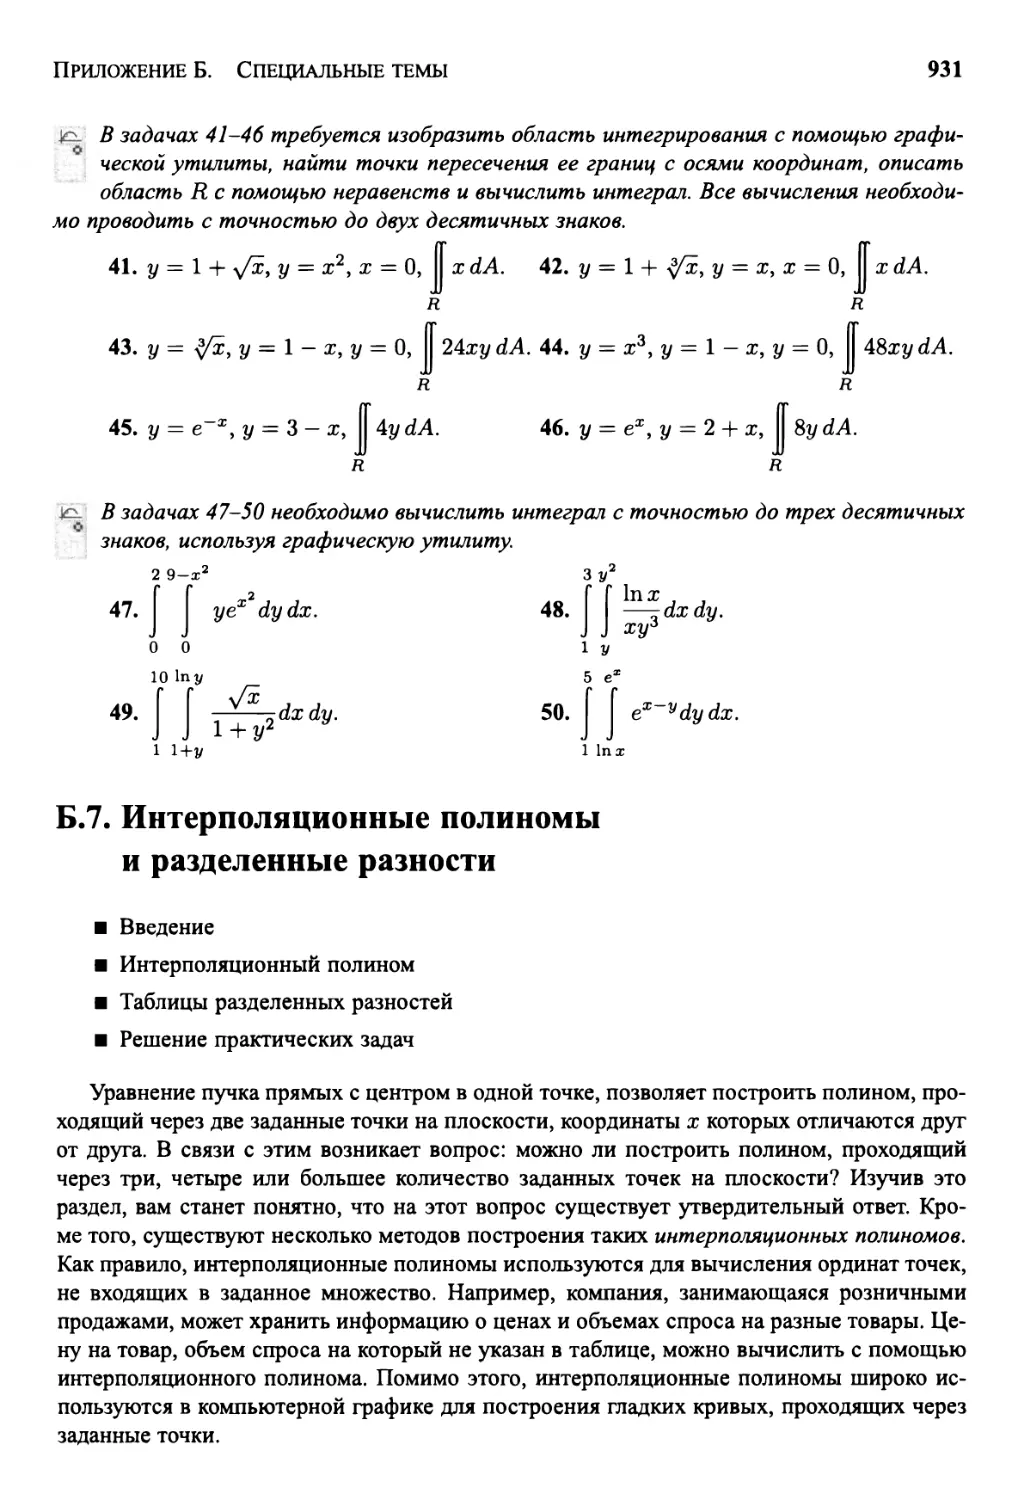 Б.7 Интерполяционные полиномы и разделенные разности